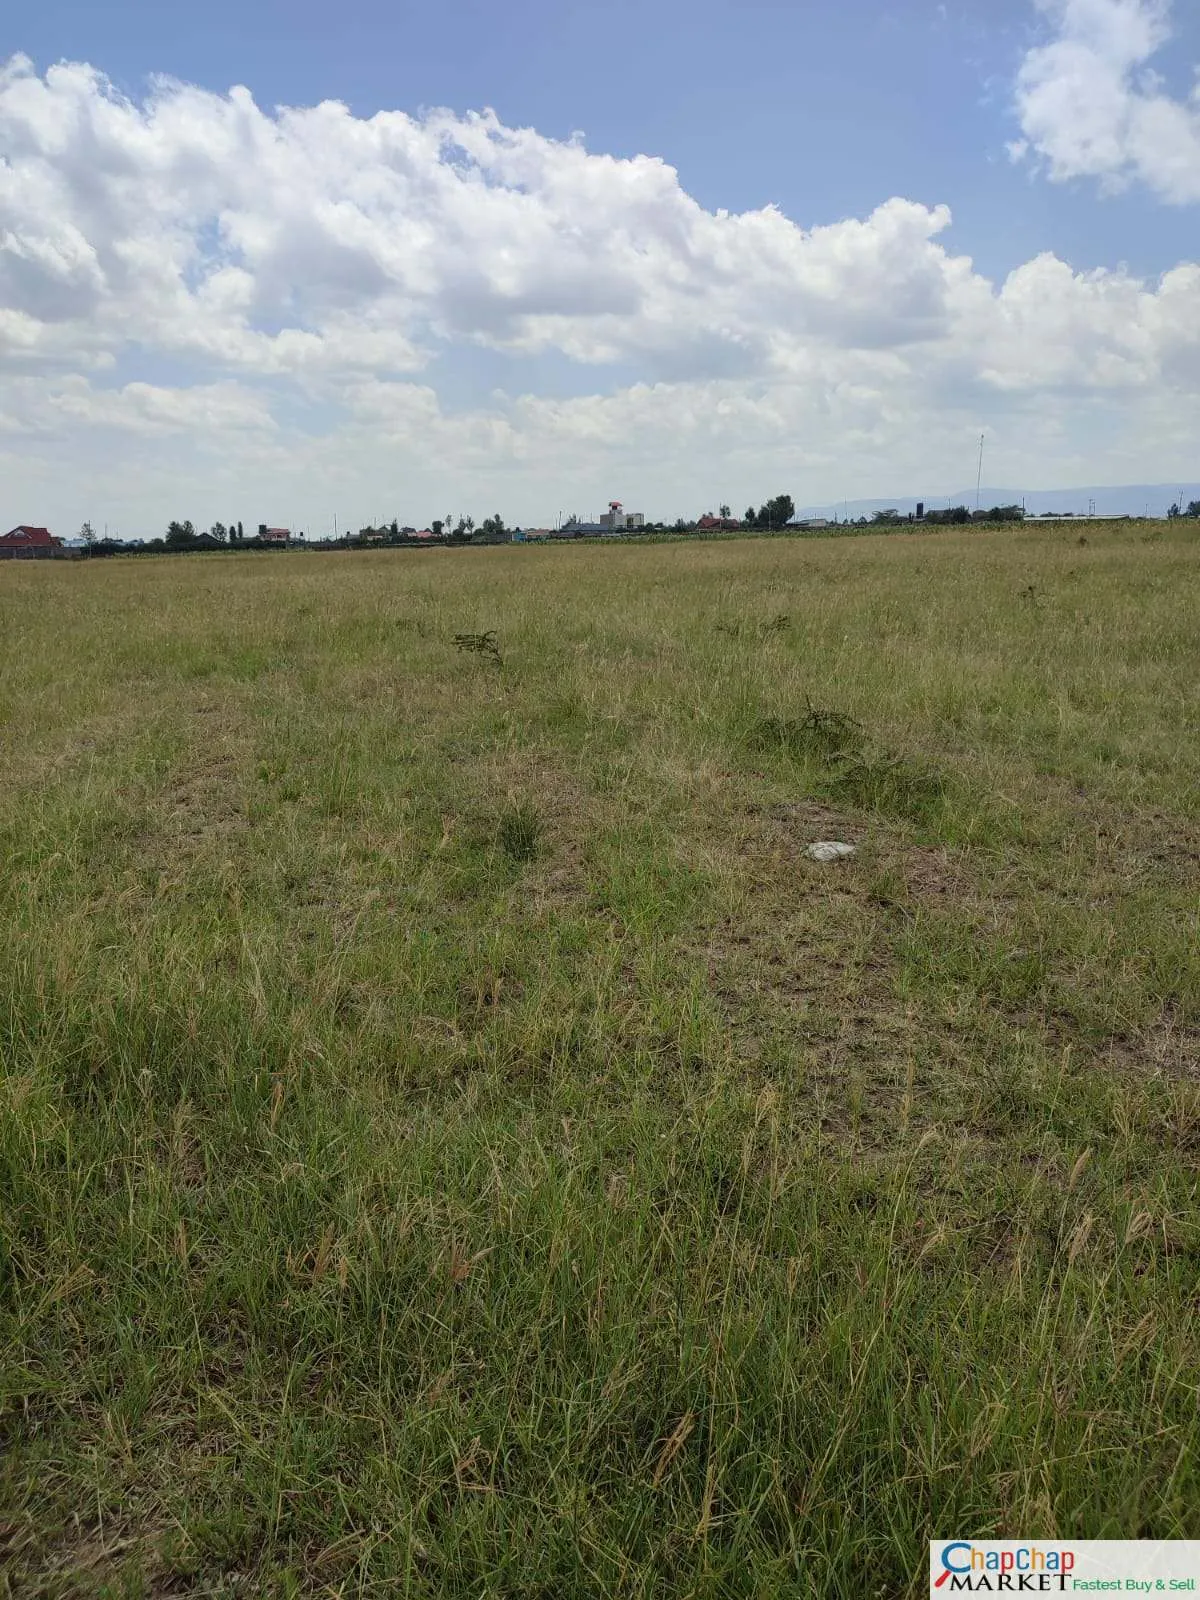 Land for Sale in Nakuru Near Airport 2 Acres Mbaruk Clean Title Deed EXCLUSIVE Nakuru mbaruk PLOT